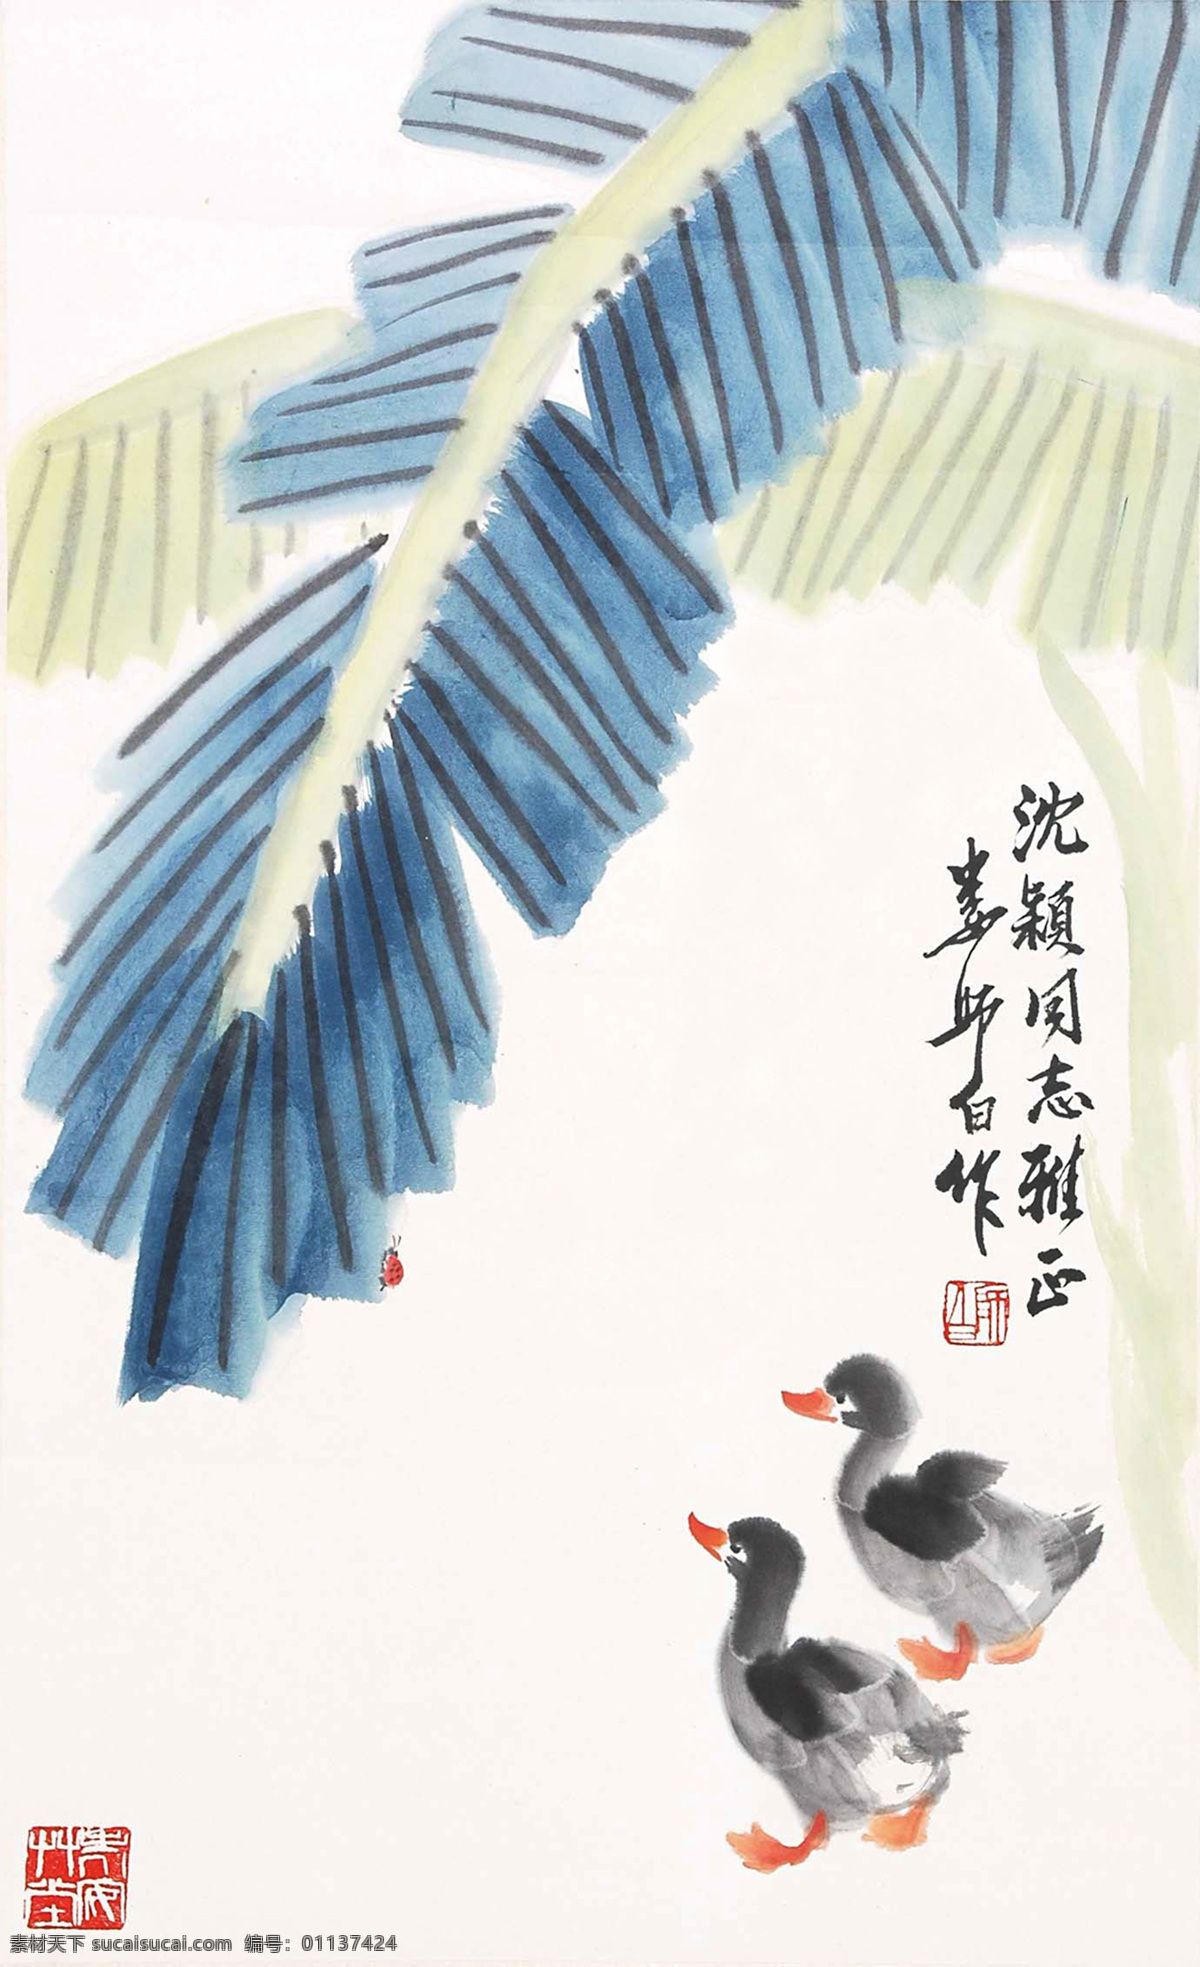 鸭子 娄师白 国画 雏鸭 小鸭 芭蕉 蕉叶 写意 水墨画 中国画 绘画书法 文化艺术